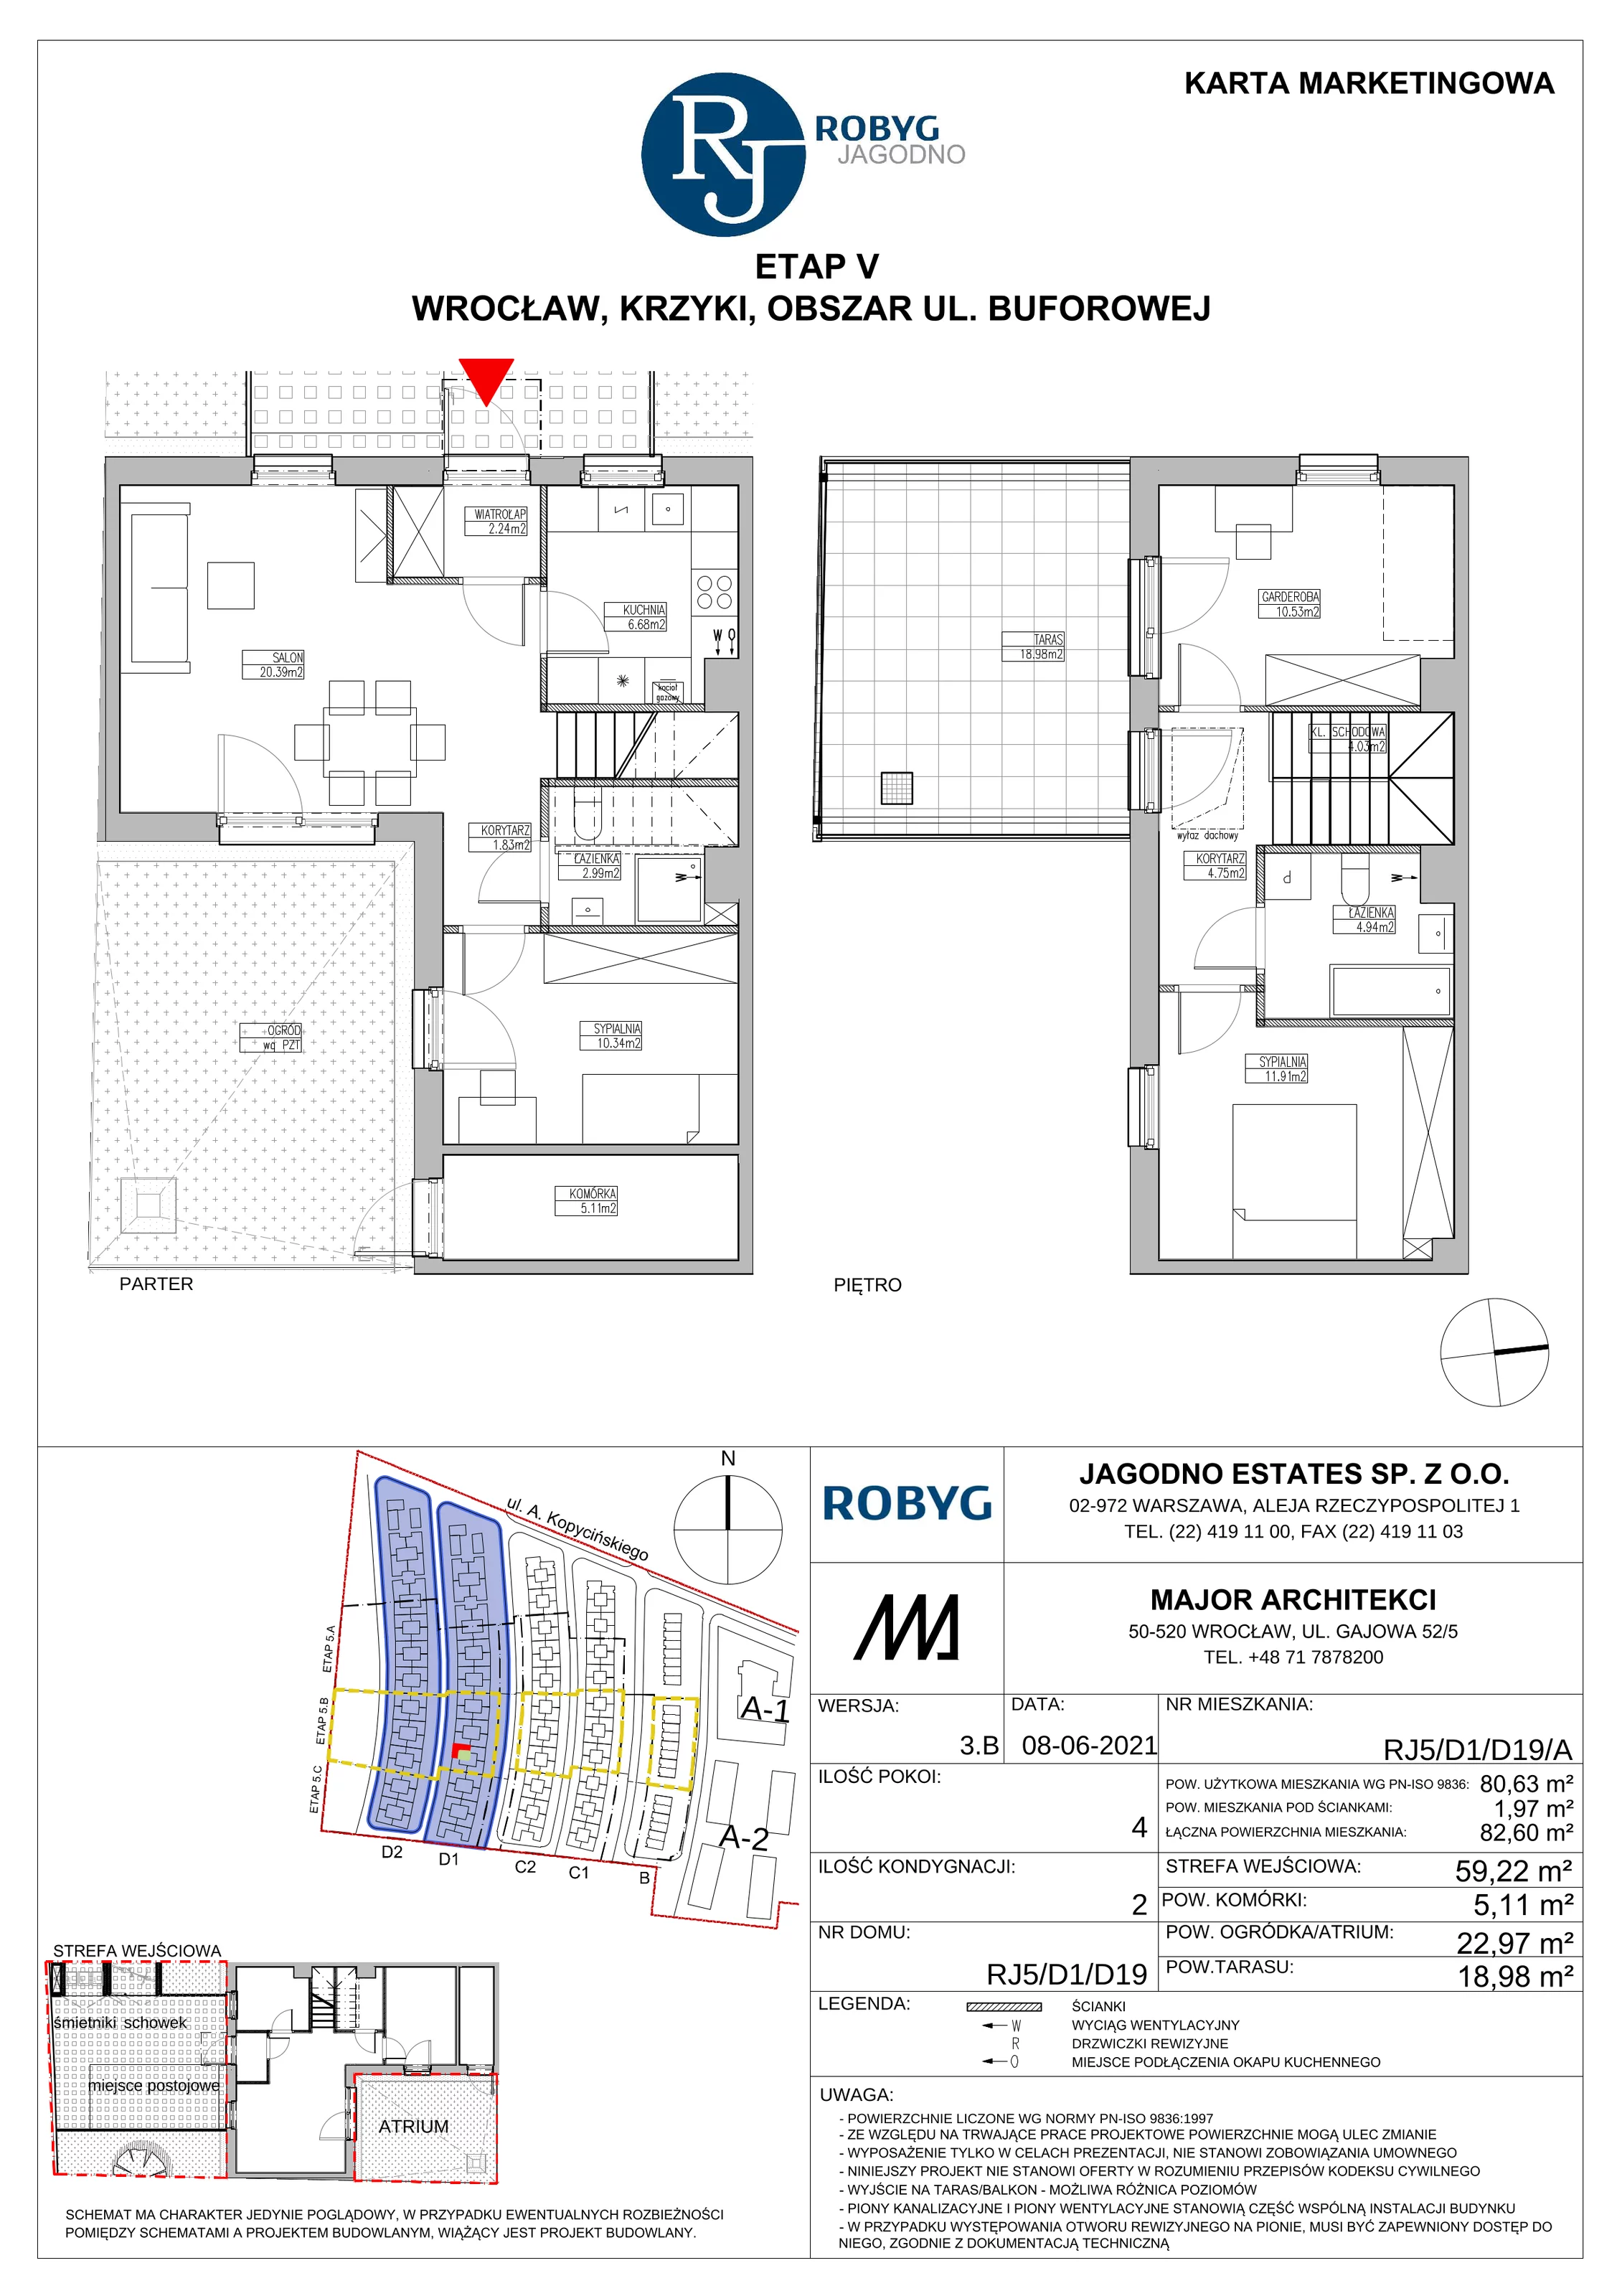 Dom 80,63 m², oferta nr RJ5/D1/D19/A, Robyg Jagodno, Wrocław, Jagodno, Krzyki, ul. Kopycińskiego